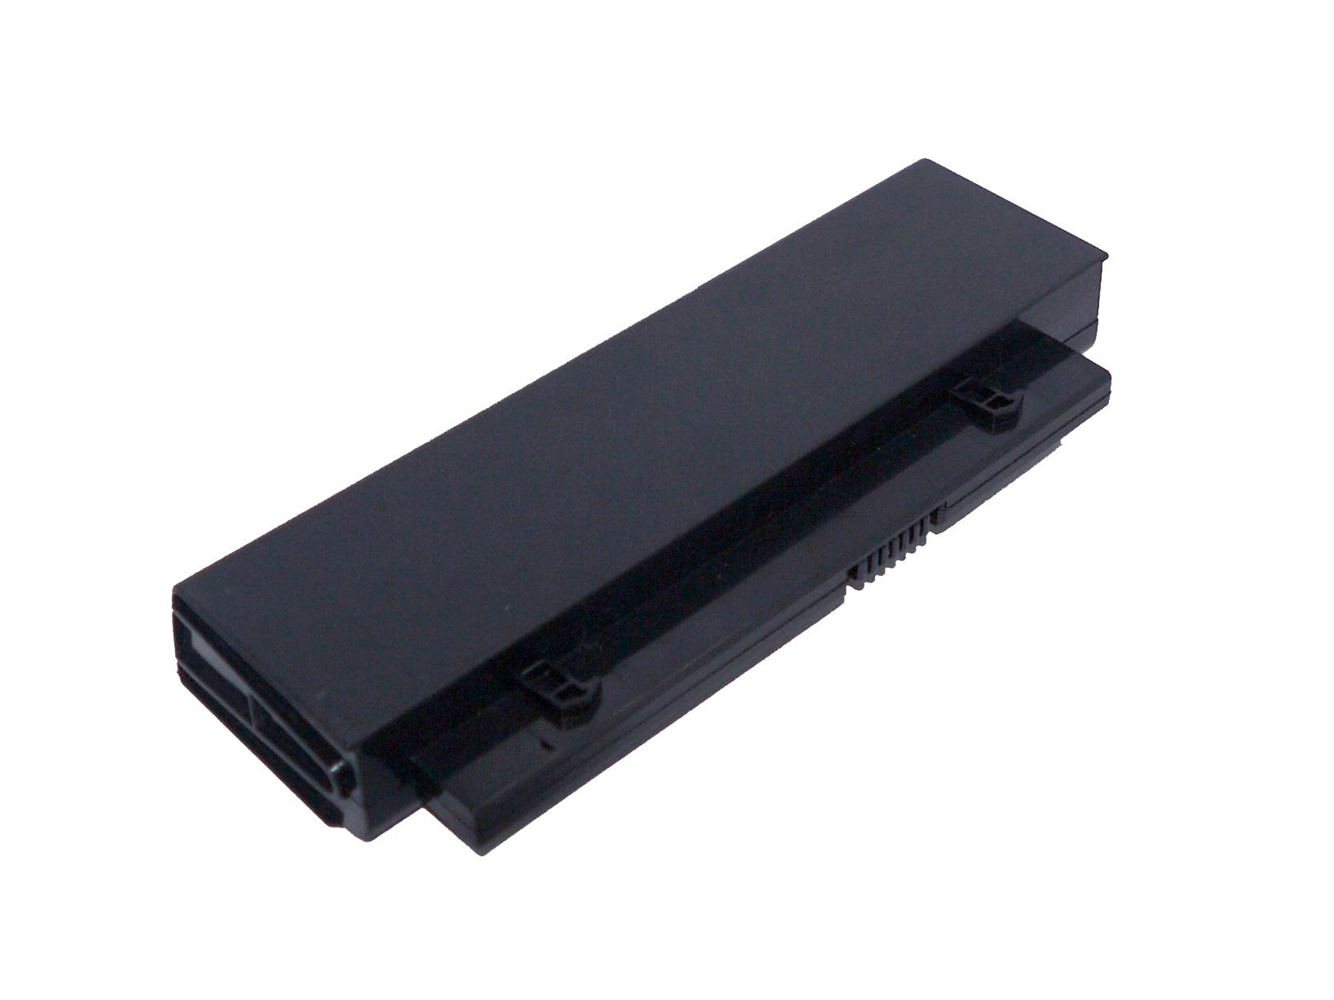 HSTNN-DB91, HSTNN-OB91 replacement Laptop Battery for HP ProBook 4210s, ProBook 4310s, 2600mAh, 14.40V